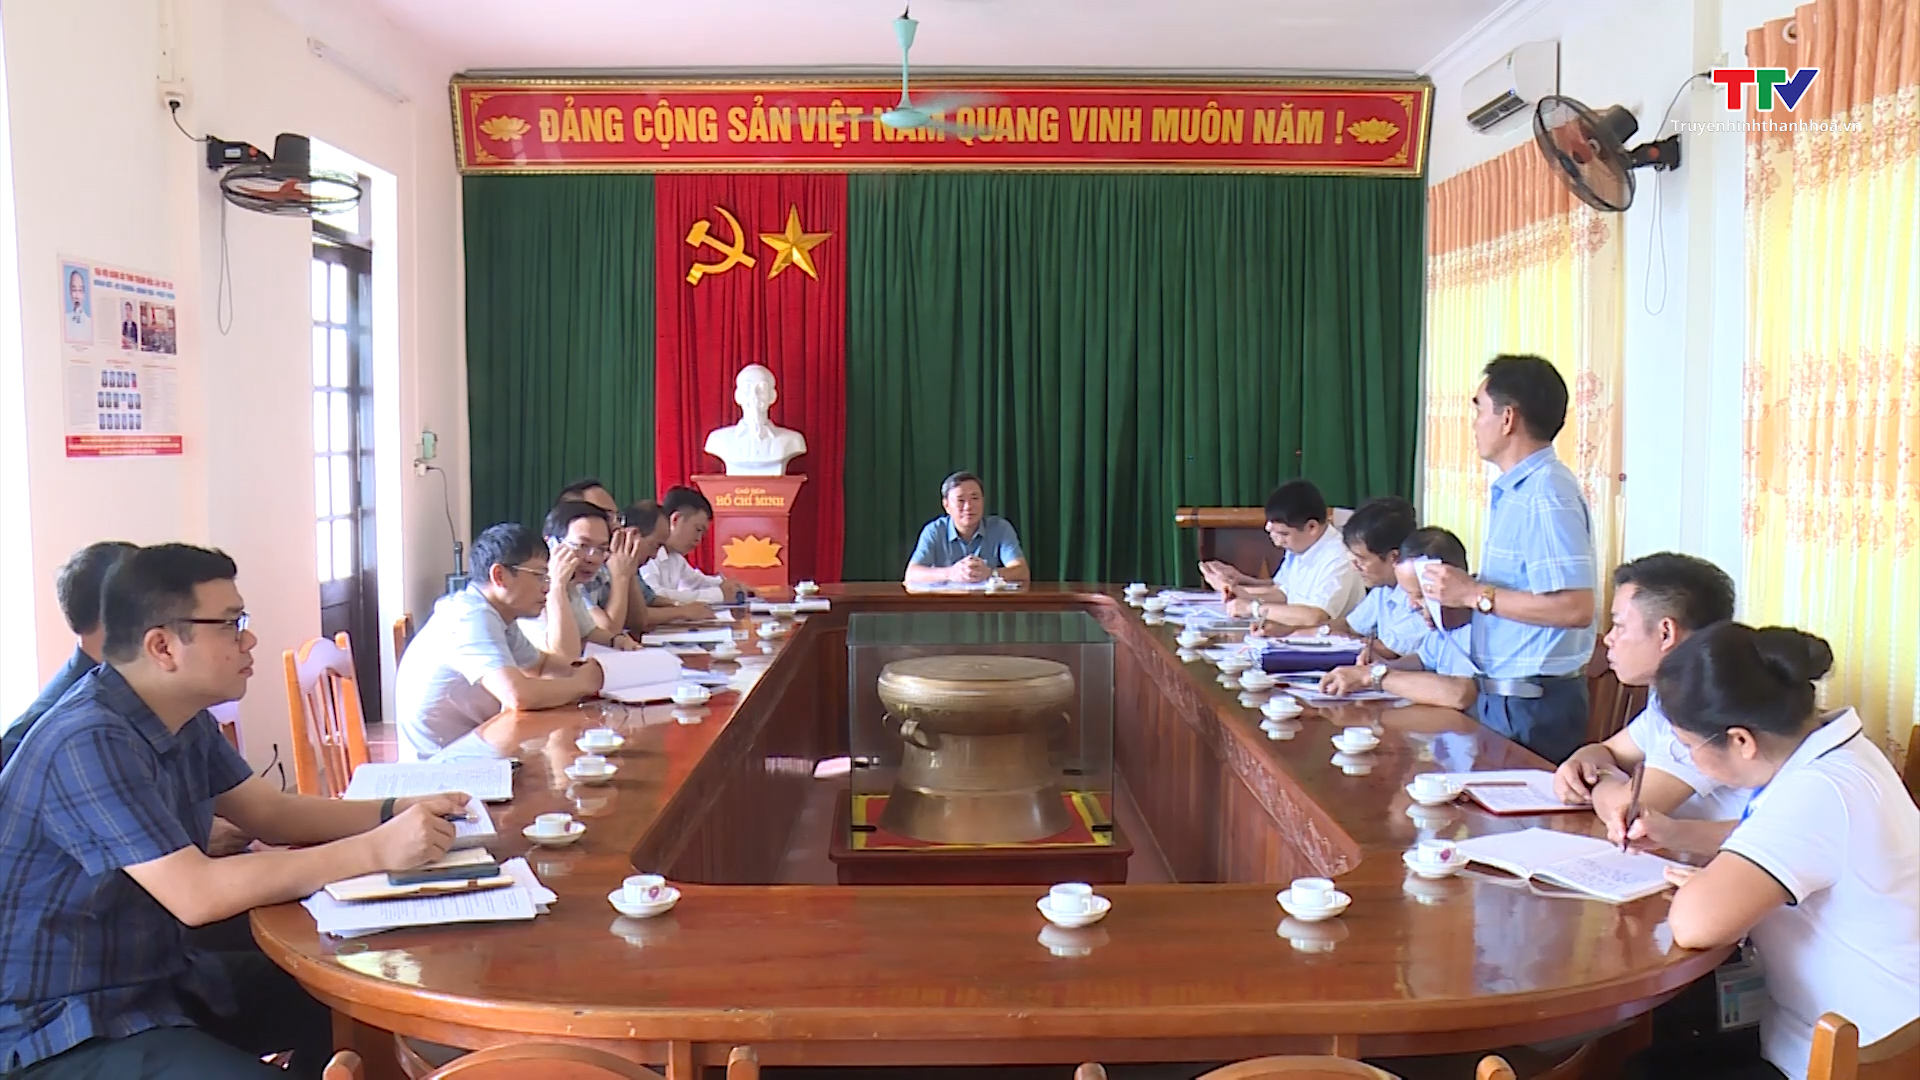 Tin tổng hợp hoạt động chính trị, kinh tế, văn hóa, xã hội trên địa bàn thành phố Thanh Hóa từ 7/9 - 13/9 - Ảnh 2.